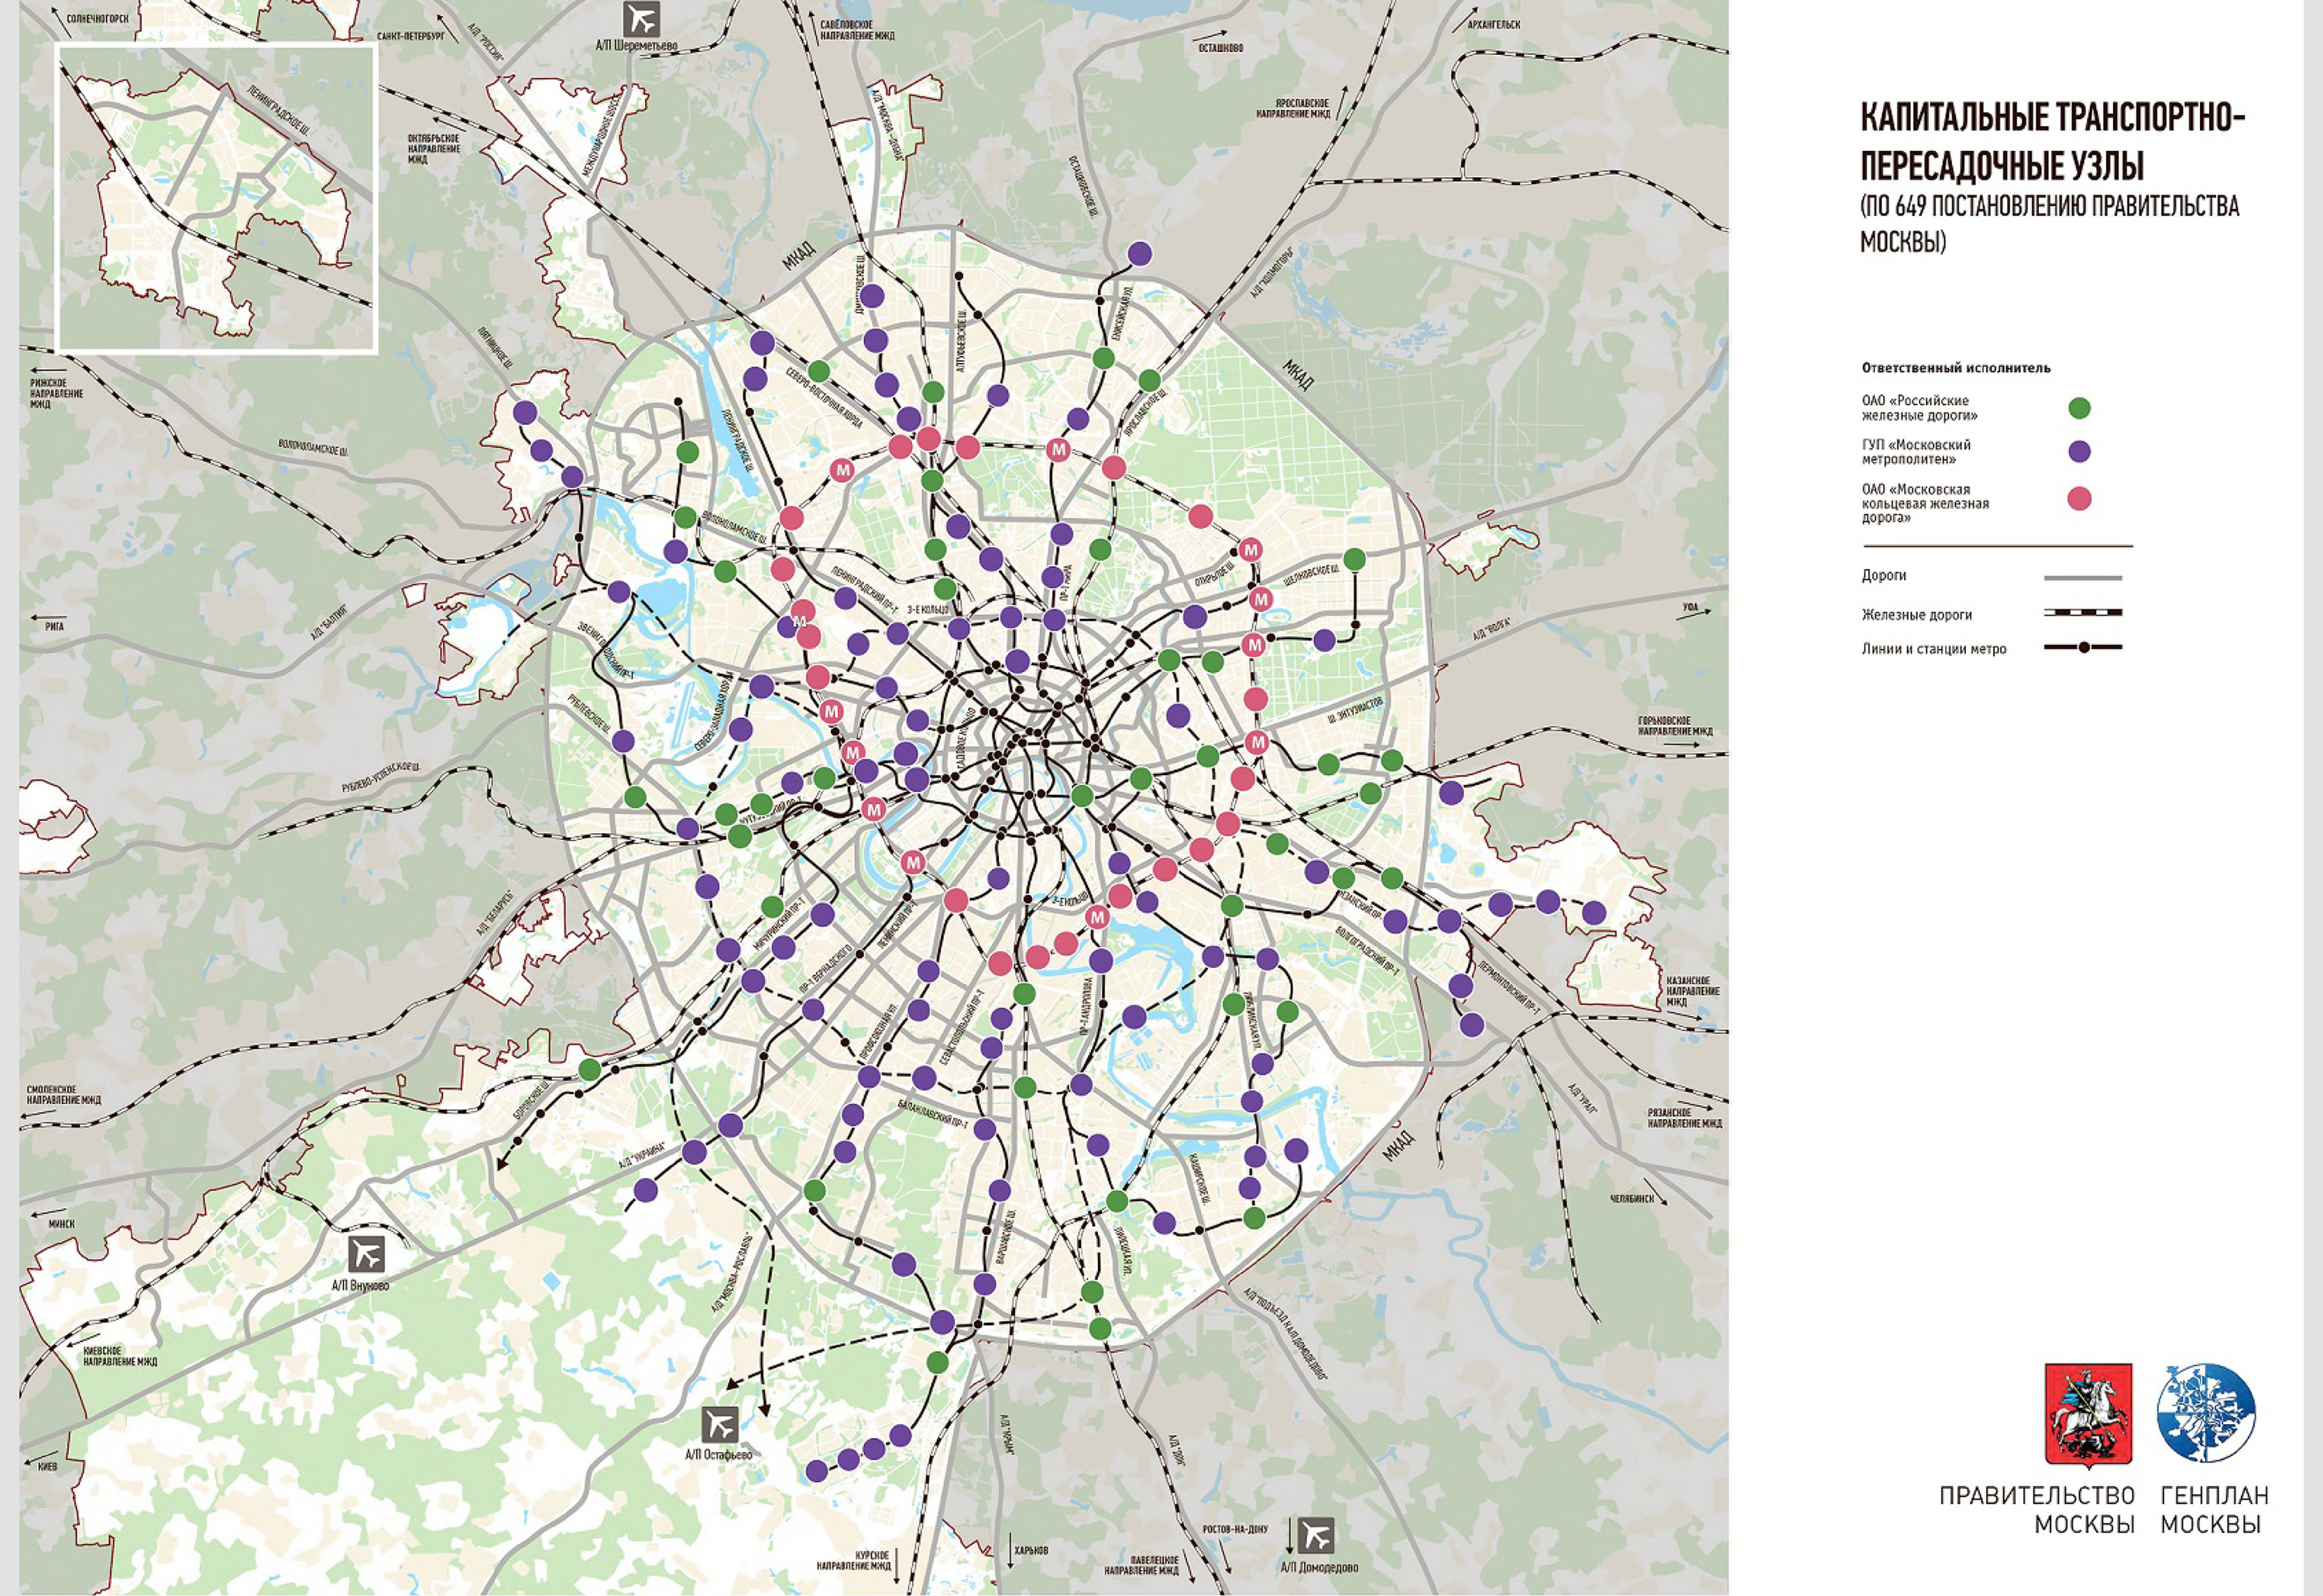 Карта москвы с автобусами онлайн в реальном